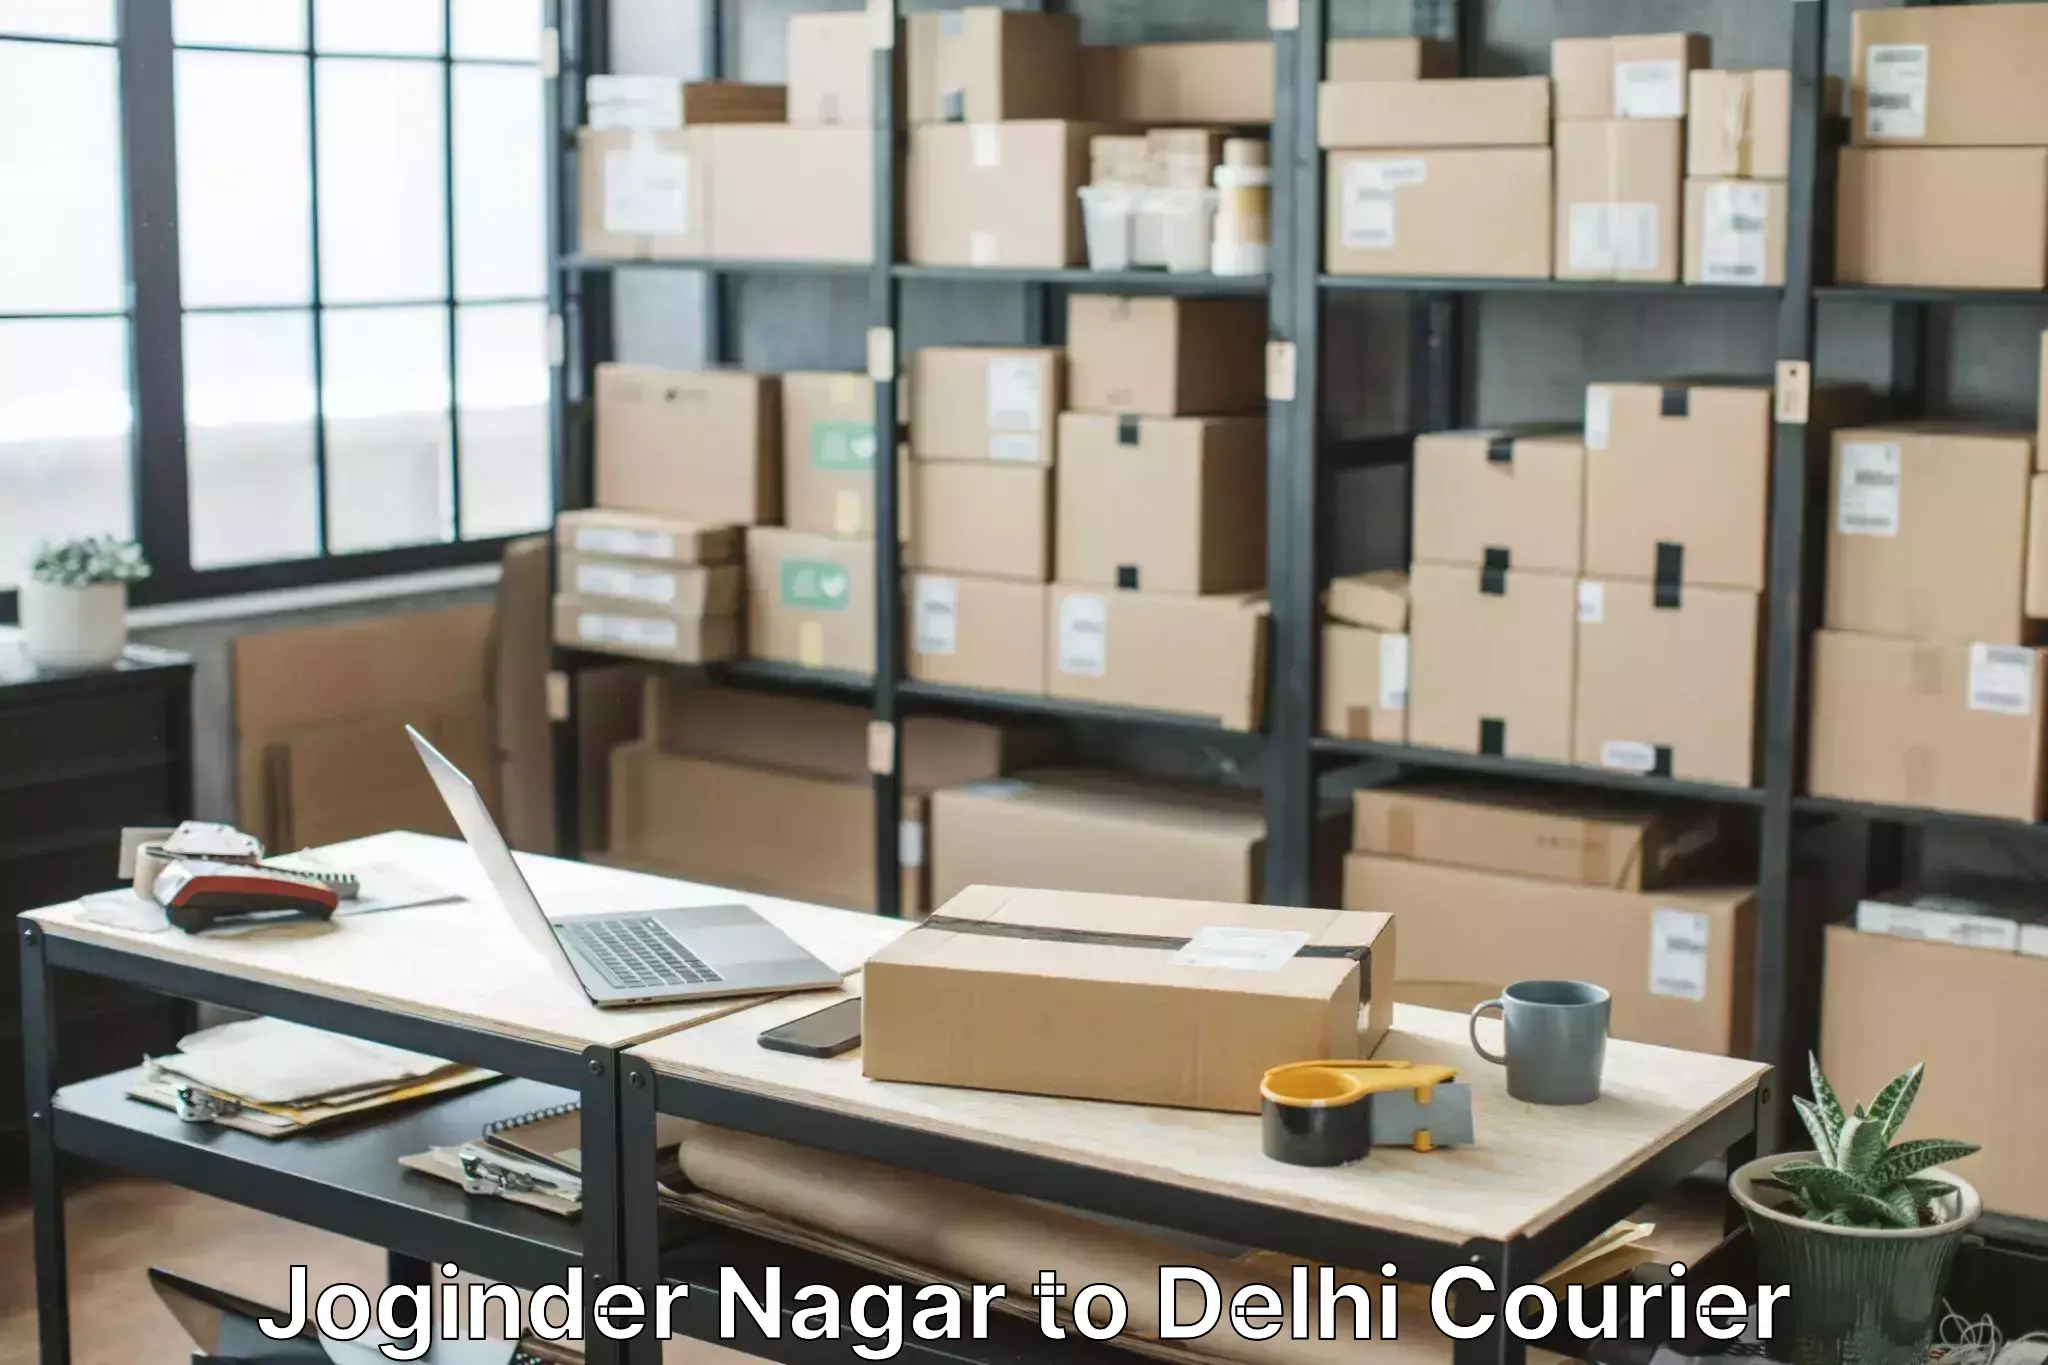 Furniture transport professionals Joginder Nagar to NCR